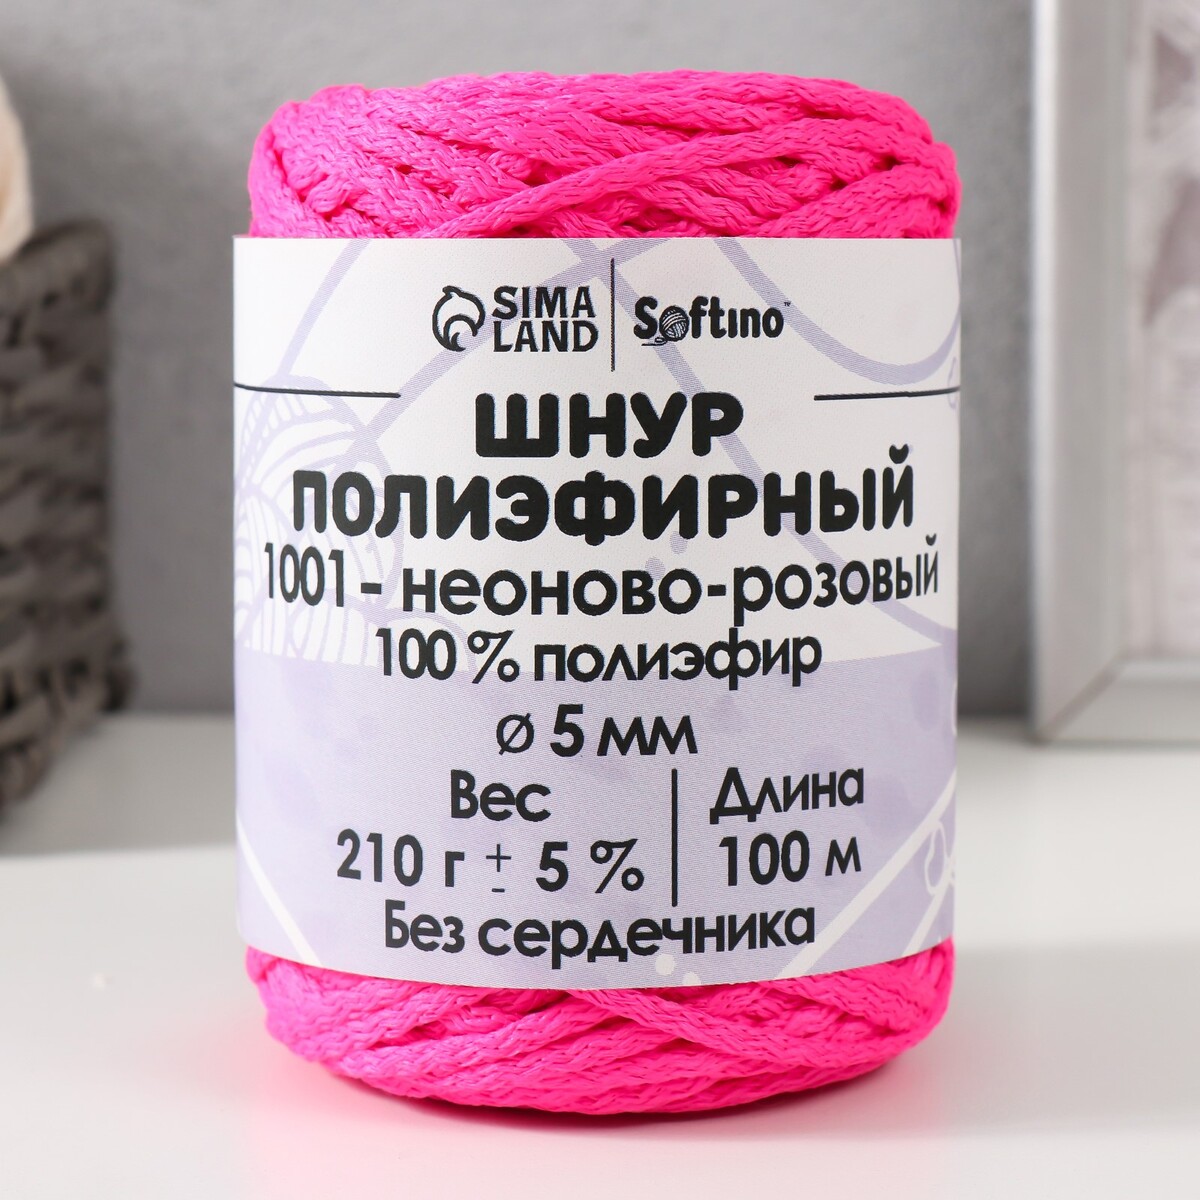 Шнур полиэфирный без сердечника 5 мм 100м/210г (+/- 5%) неоново-розовый-1001 шнур для вязания 100% полиэфир ширина 3 мм 100м розовый